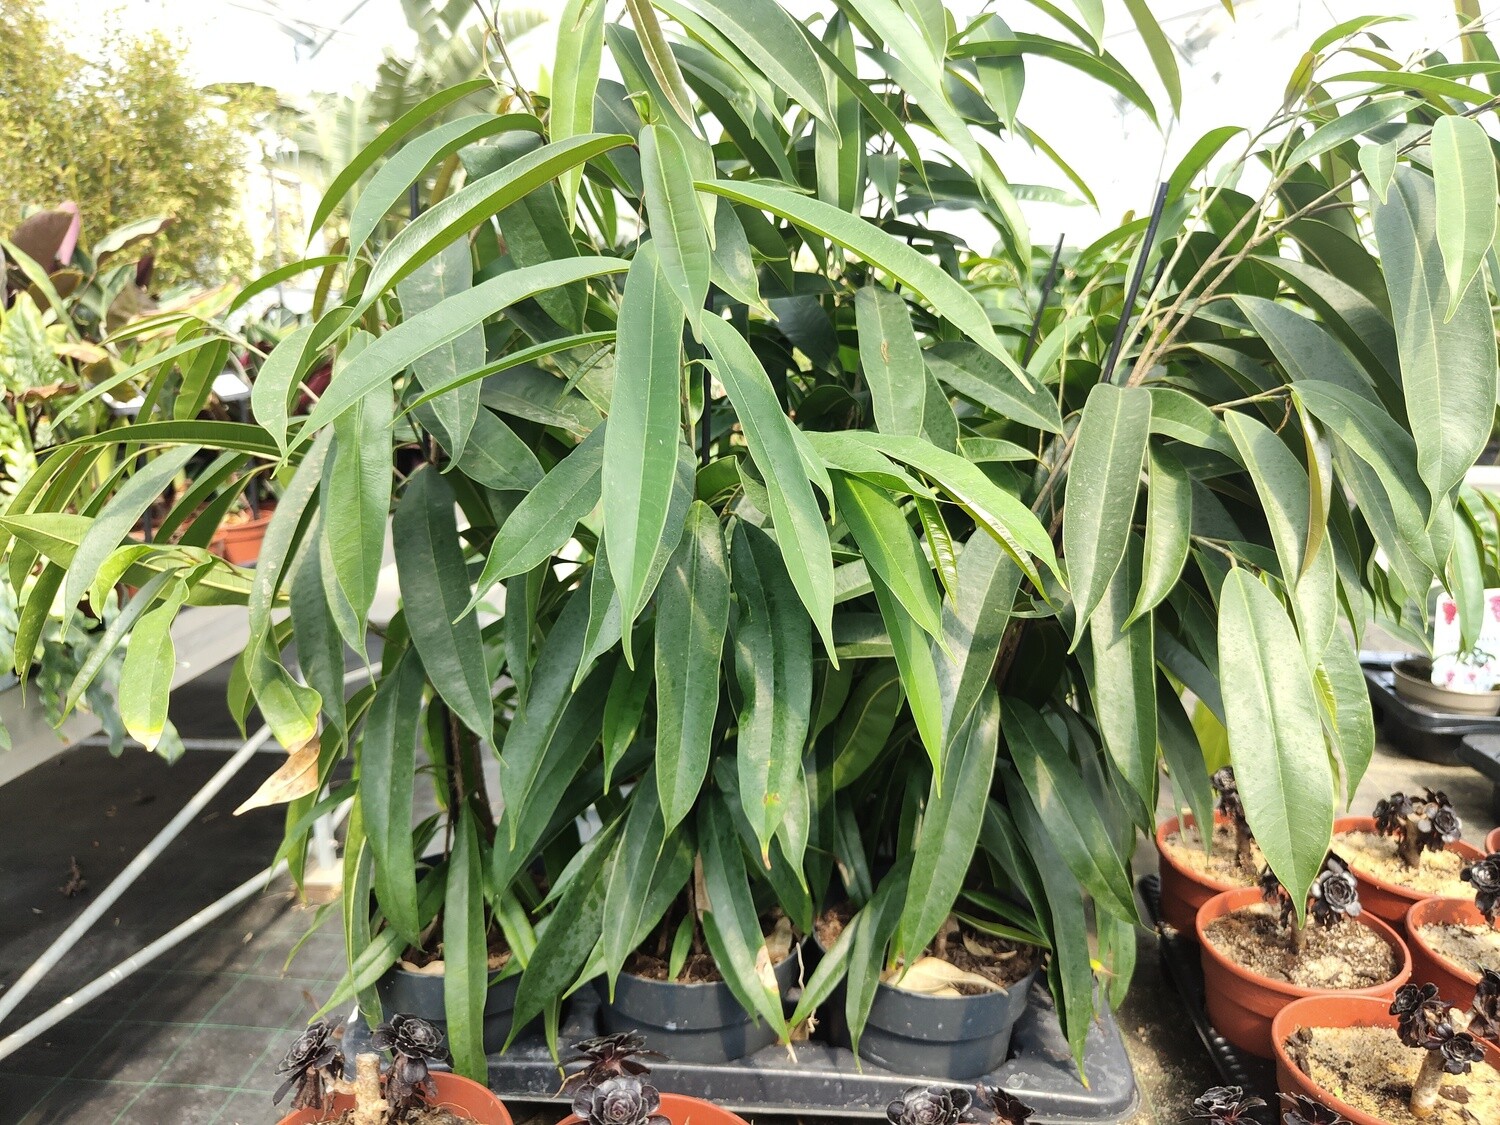 "AmaPlant Ficus Alii" Higuera de hoja estrecha popular por su capacidad para purificar el aire 90 cm (alargada) - Interior con mucha luz o exterior semisombra o a pleno sol - ENVIO INCLUIDO